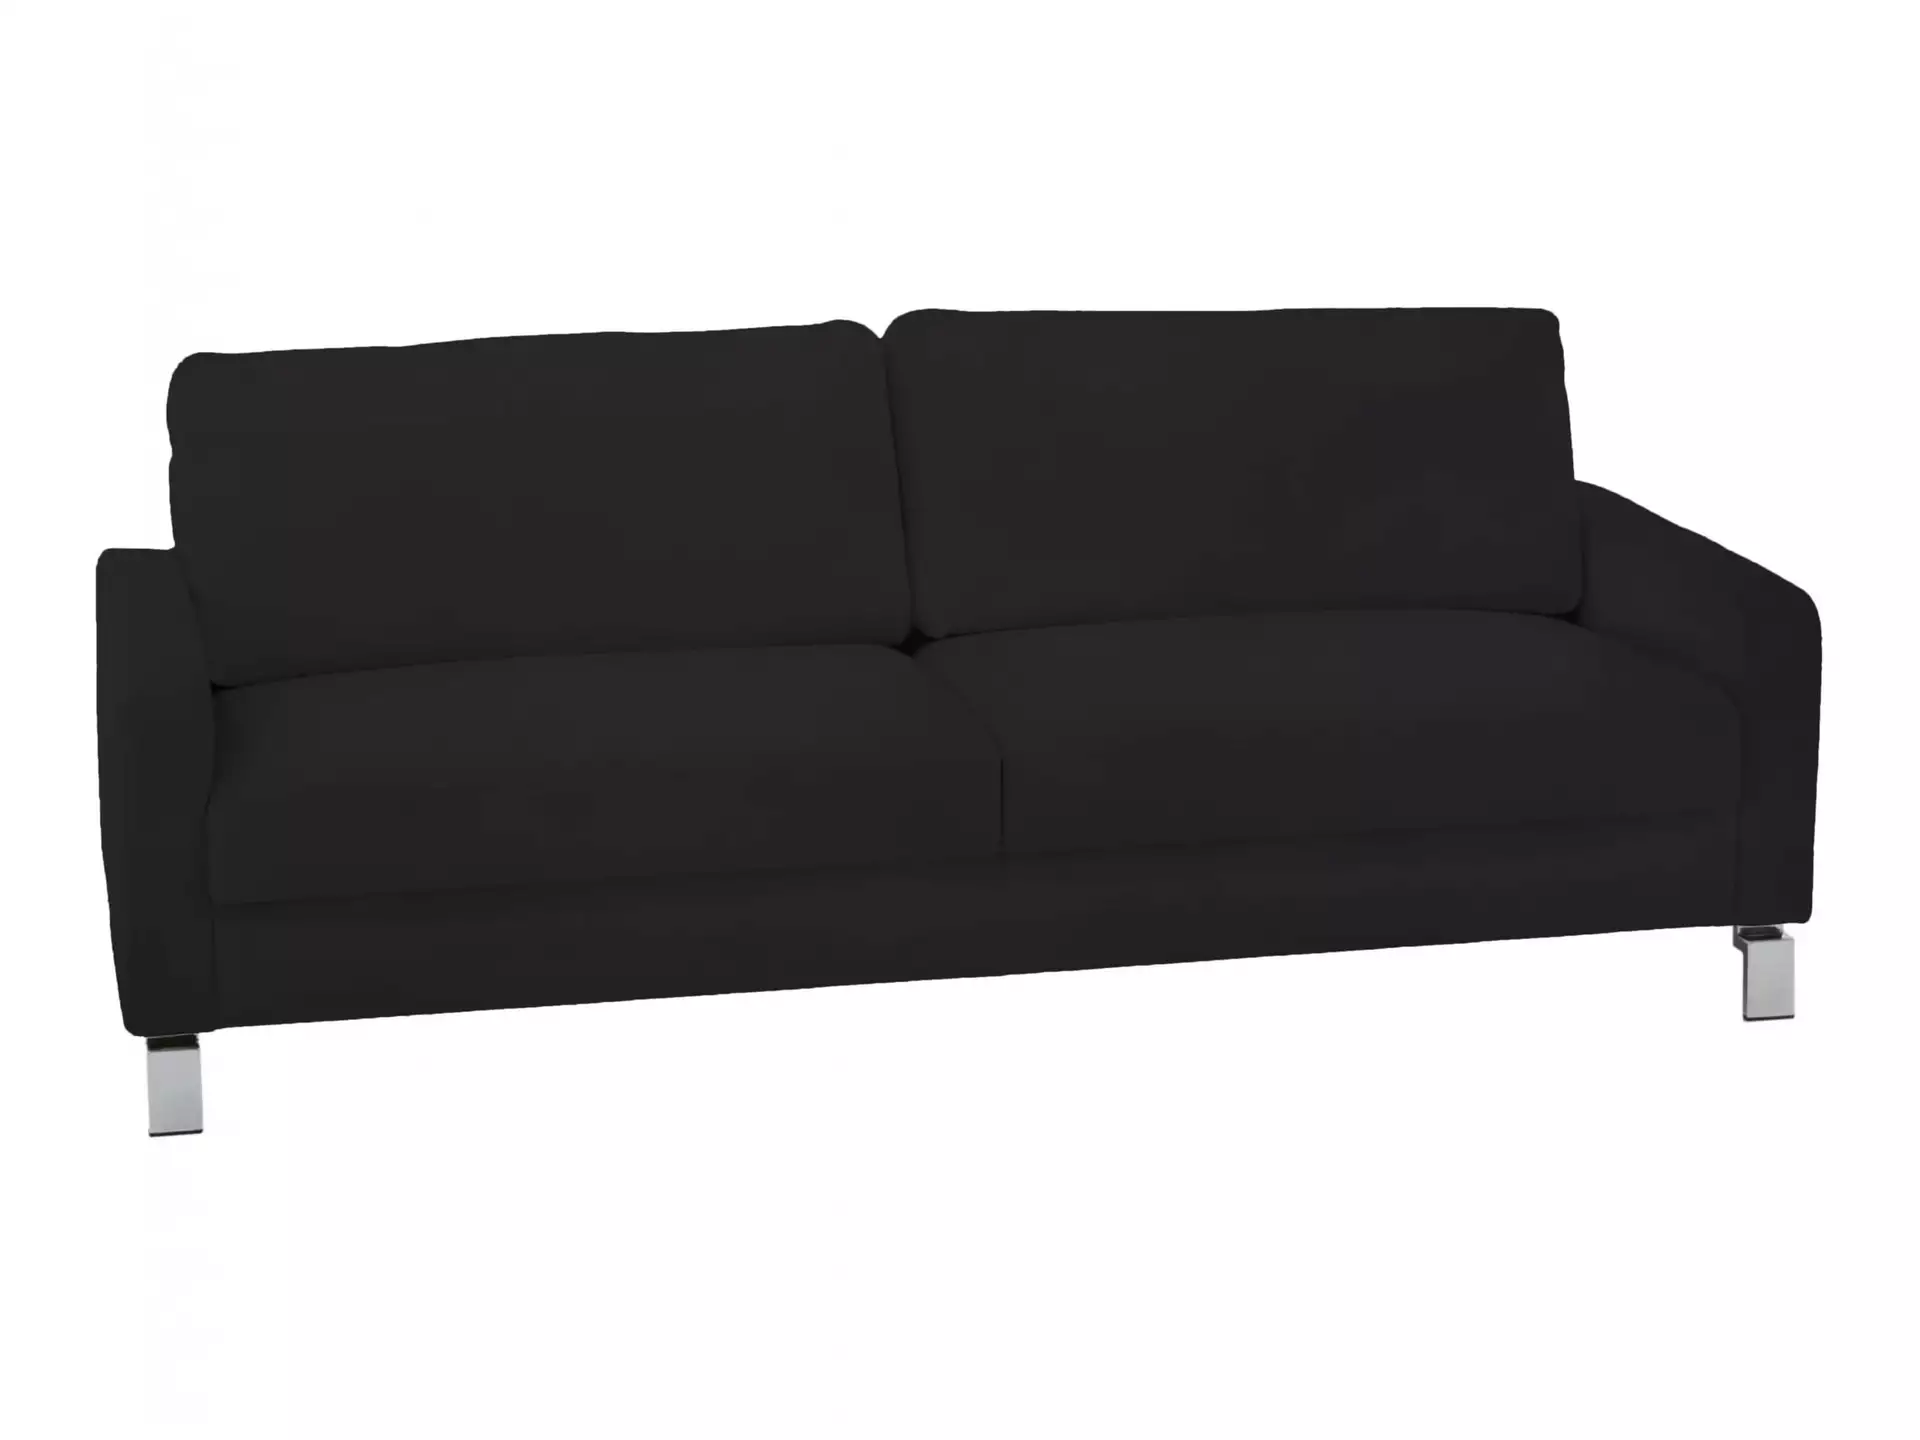 Sofa Interims Basic B: 204 cm Candy / Farbe: Schwarz / Material: Leder Basic